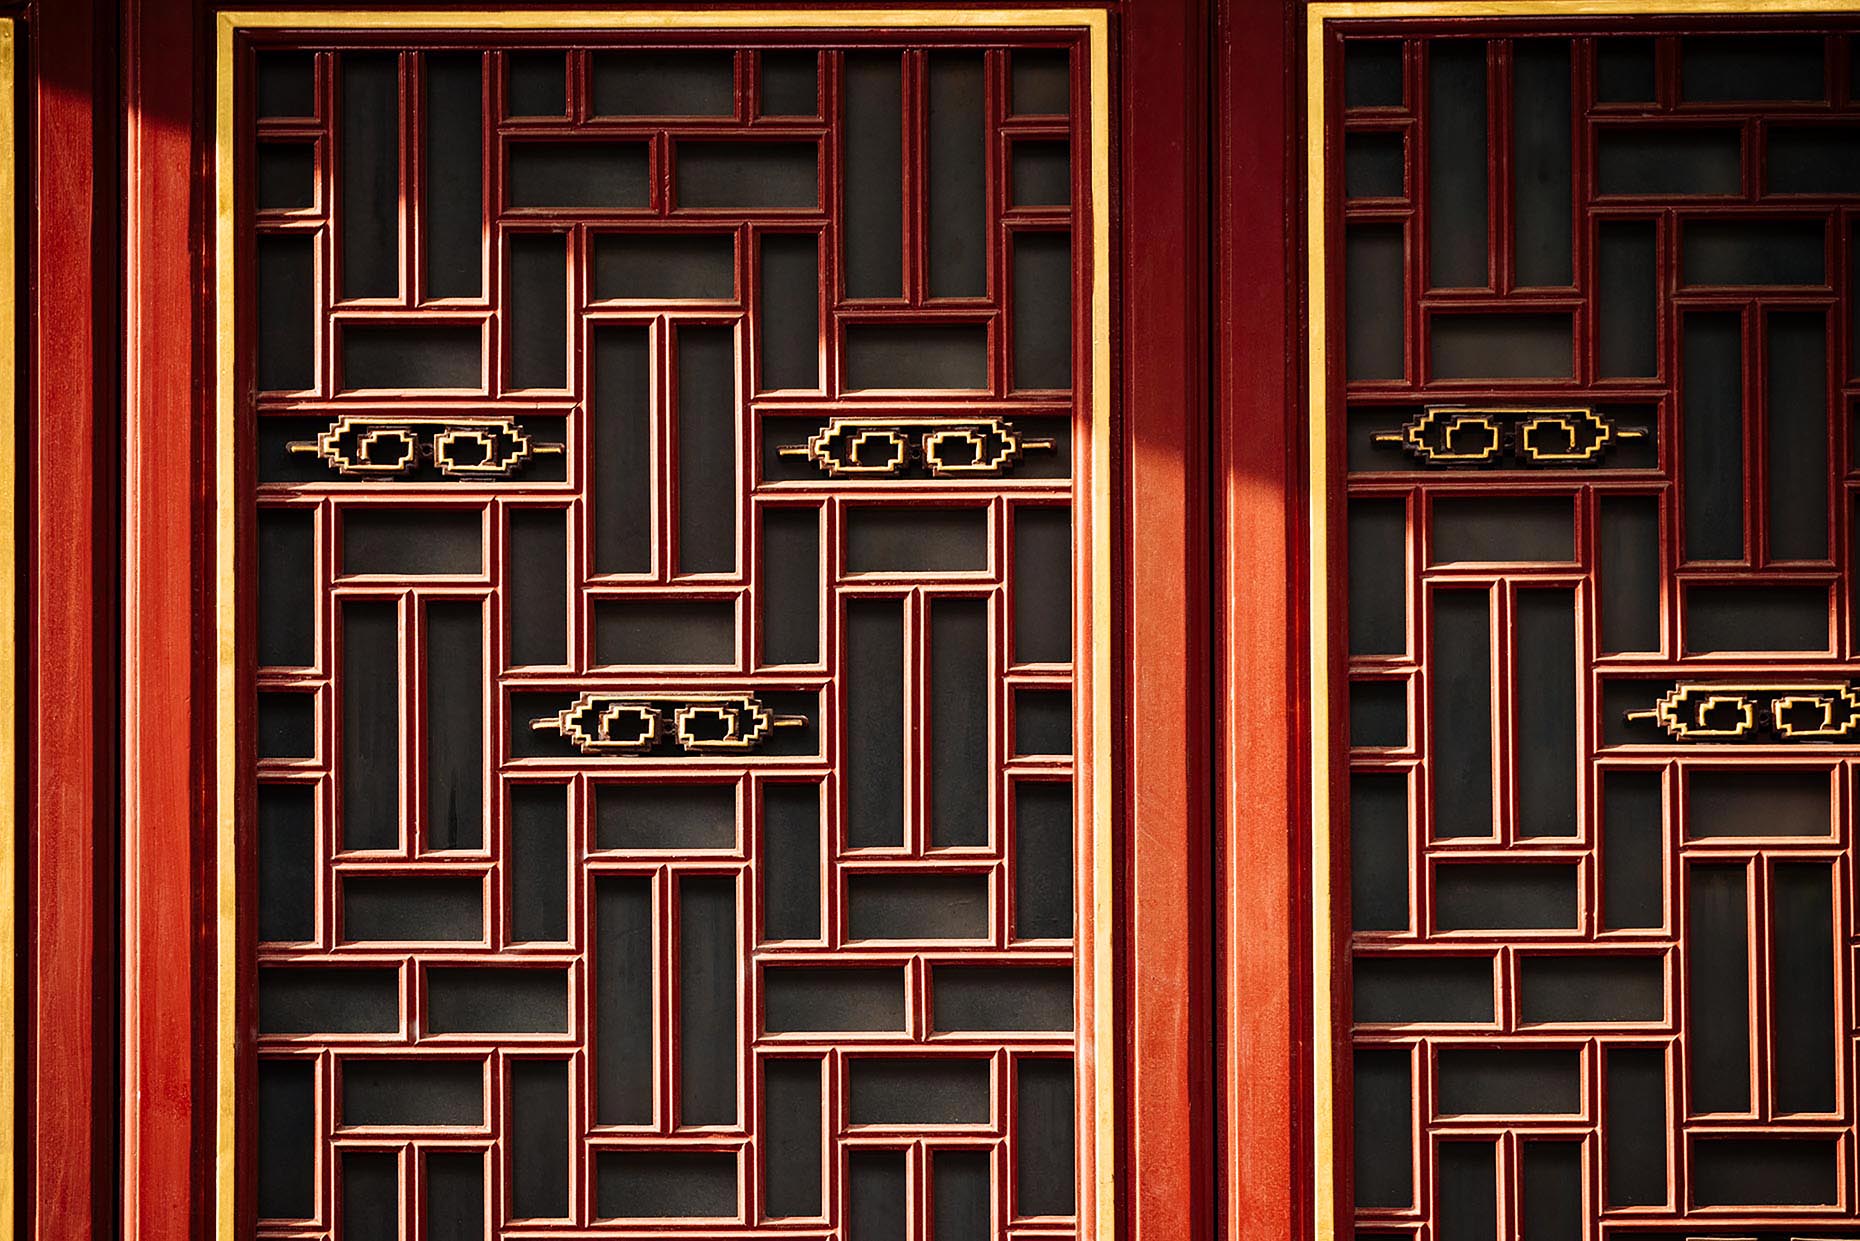 yuantong-temple-door-graphic-detail-kunming-china-14